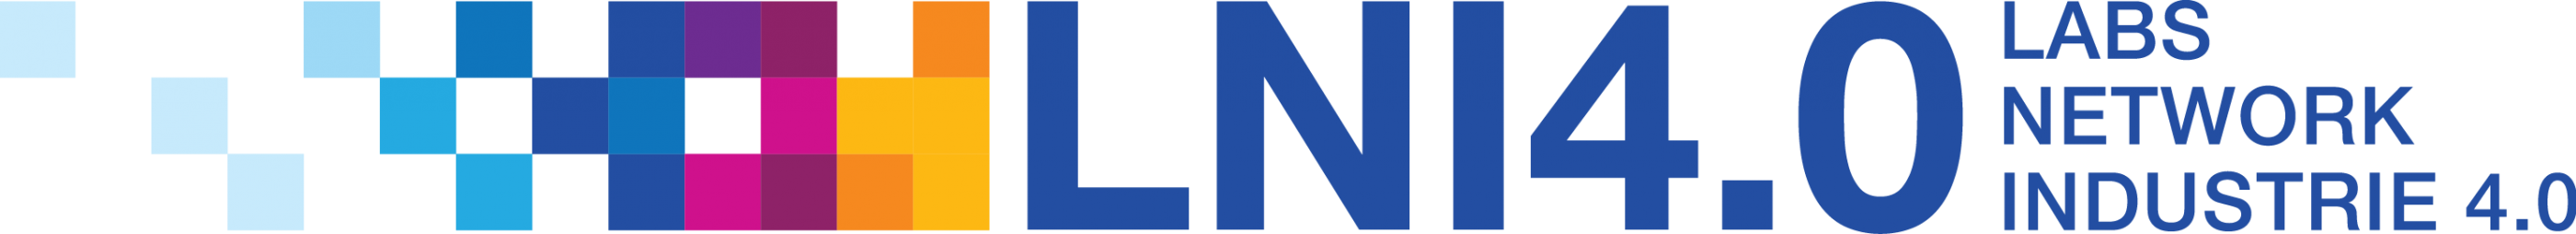 Logo-BioMedTec-Partner L